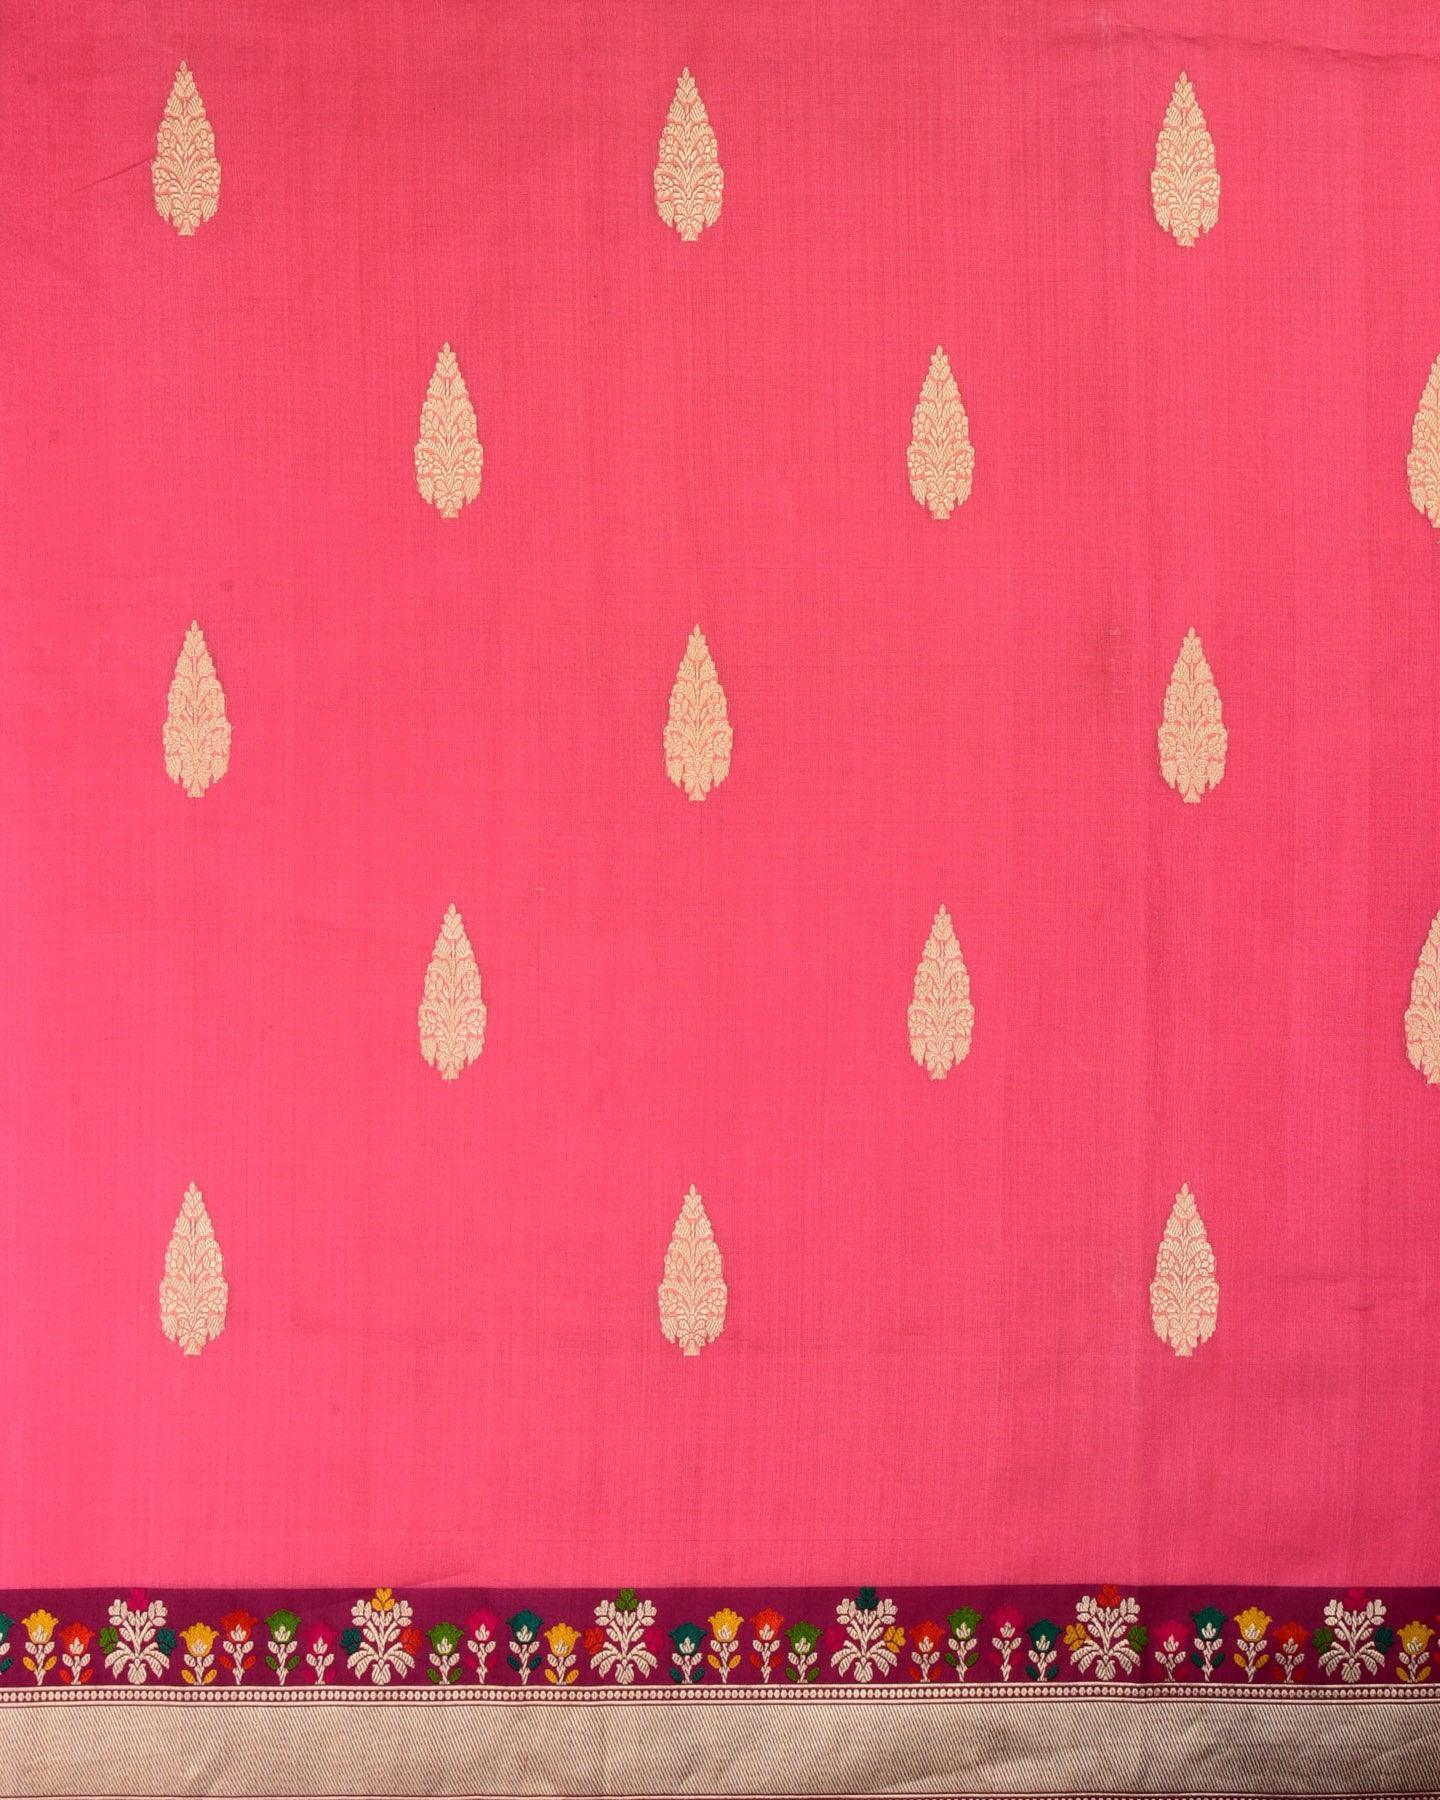 Peach Banarasi Kadhuan Brocade Handwoven Kora Silk Saree with Meenedar Bel Border - By HolyWeaves, Benares